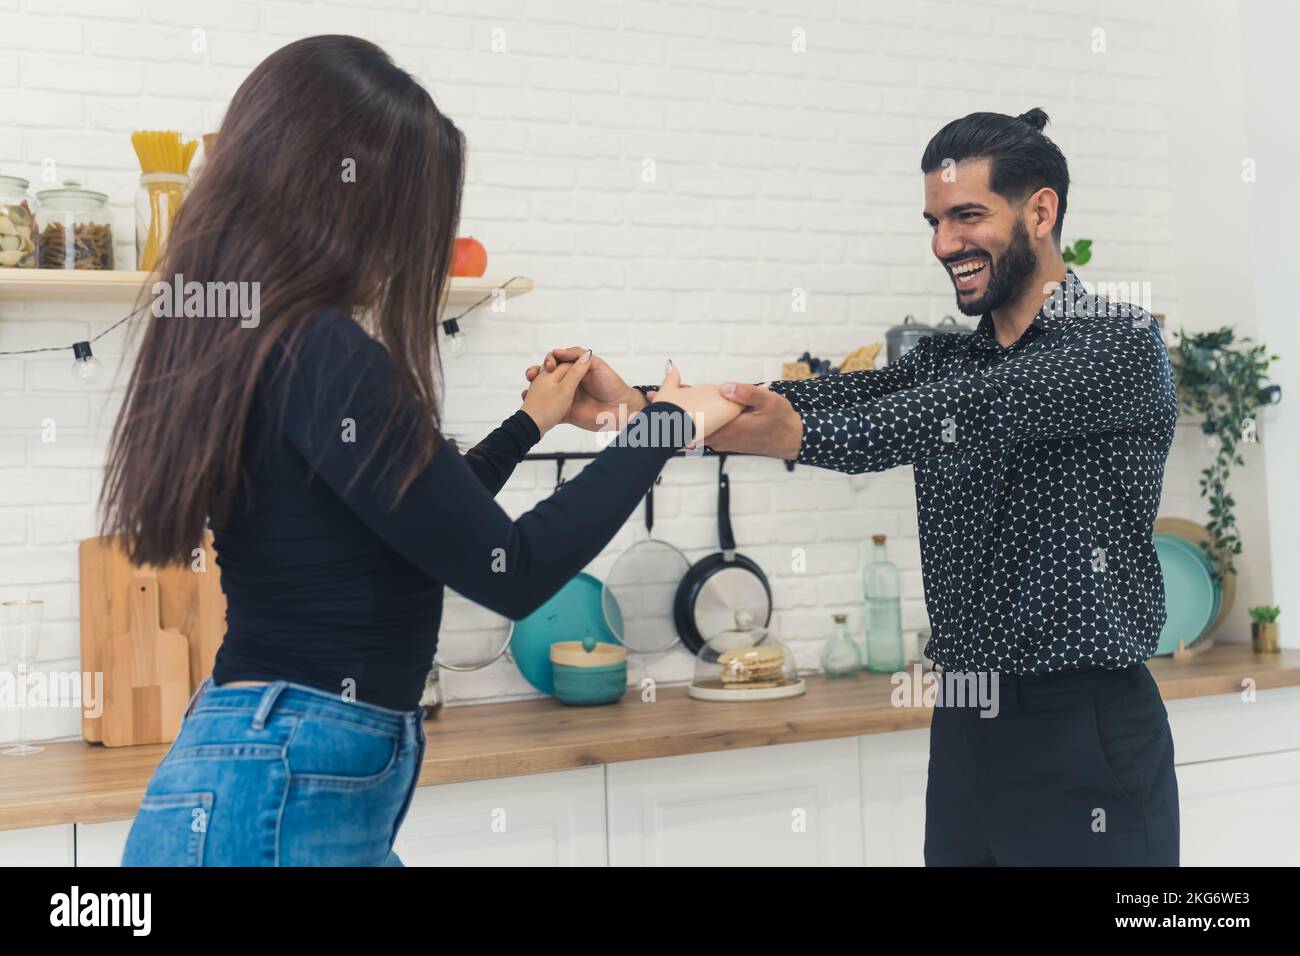 Ein junges, fröhliches, elegantes Paar, das lacht, Händchen hält, in der Küche in seiner neuen hellen Wohnung tanzt, den Umzug feiert. Hochwertiges Foto Stockfoto